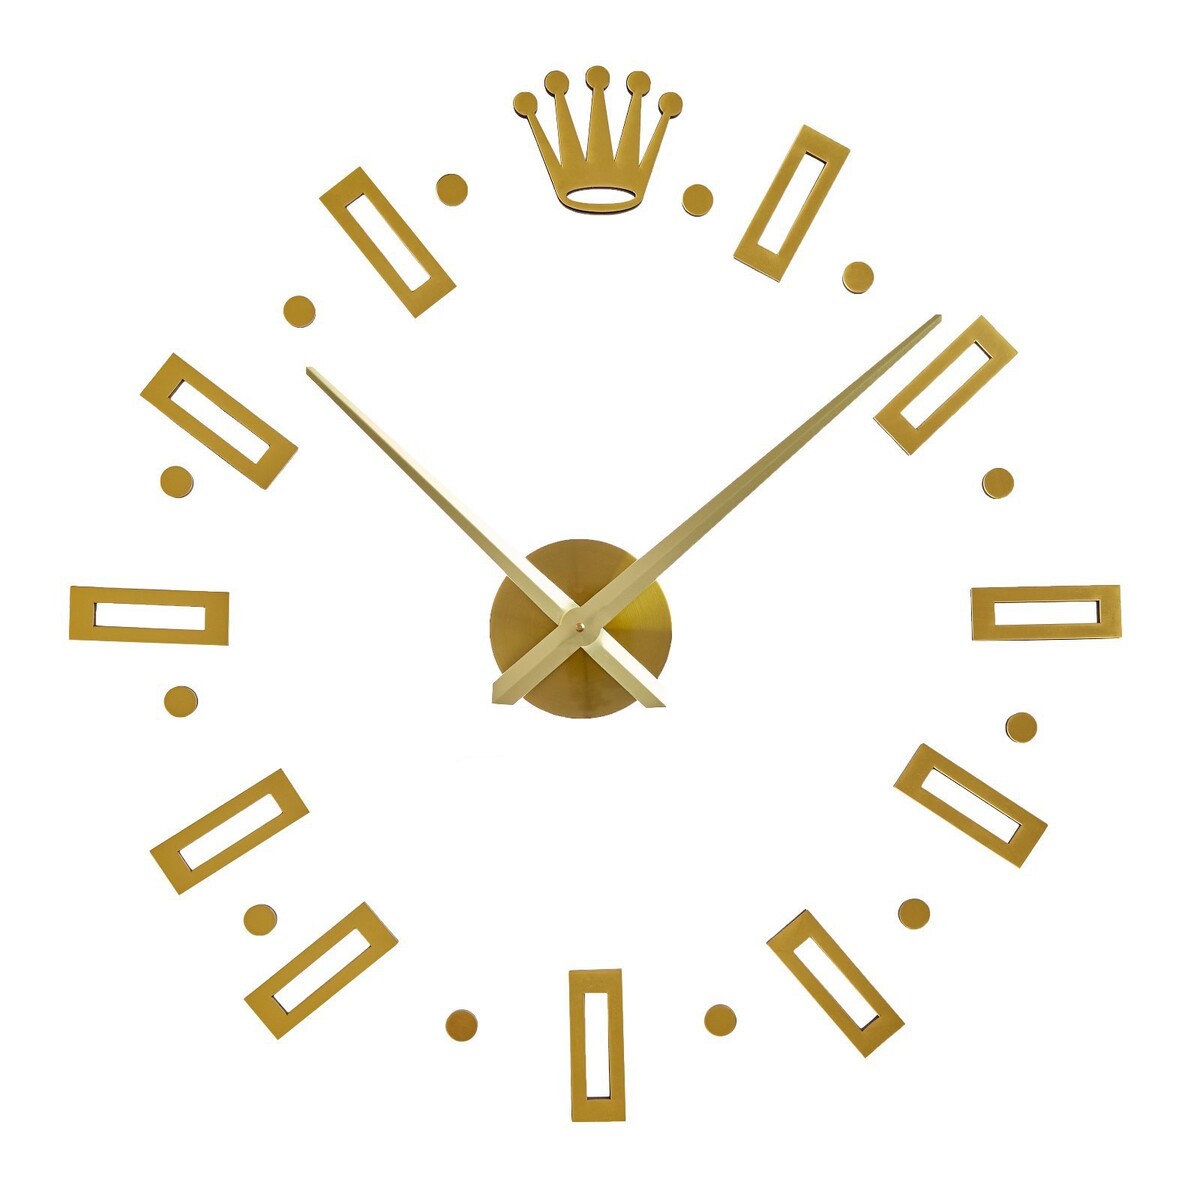 Часы-наклейка, серия: diy, часы наклейка серия diy d 120 см мин стрелка 39 см ч стрелка 31 5 см золото